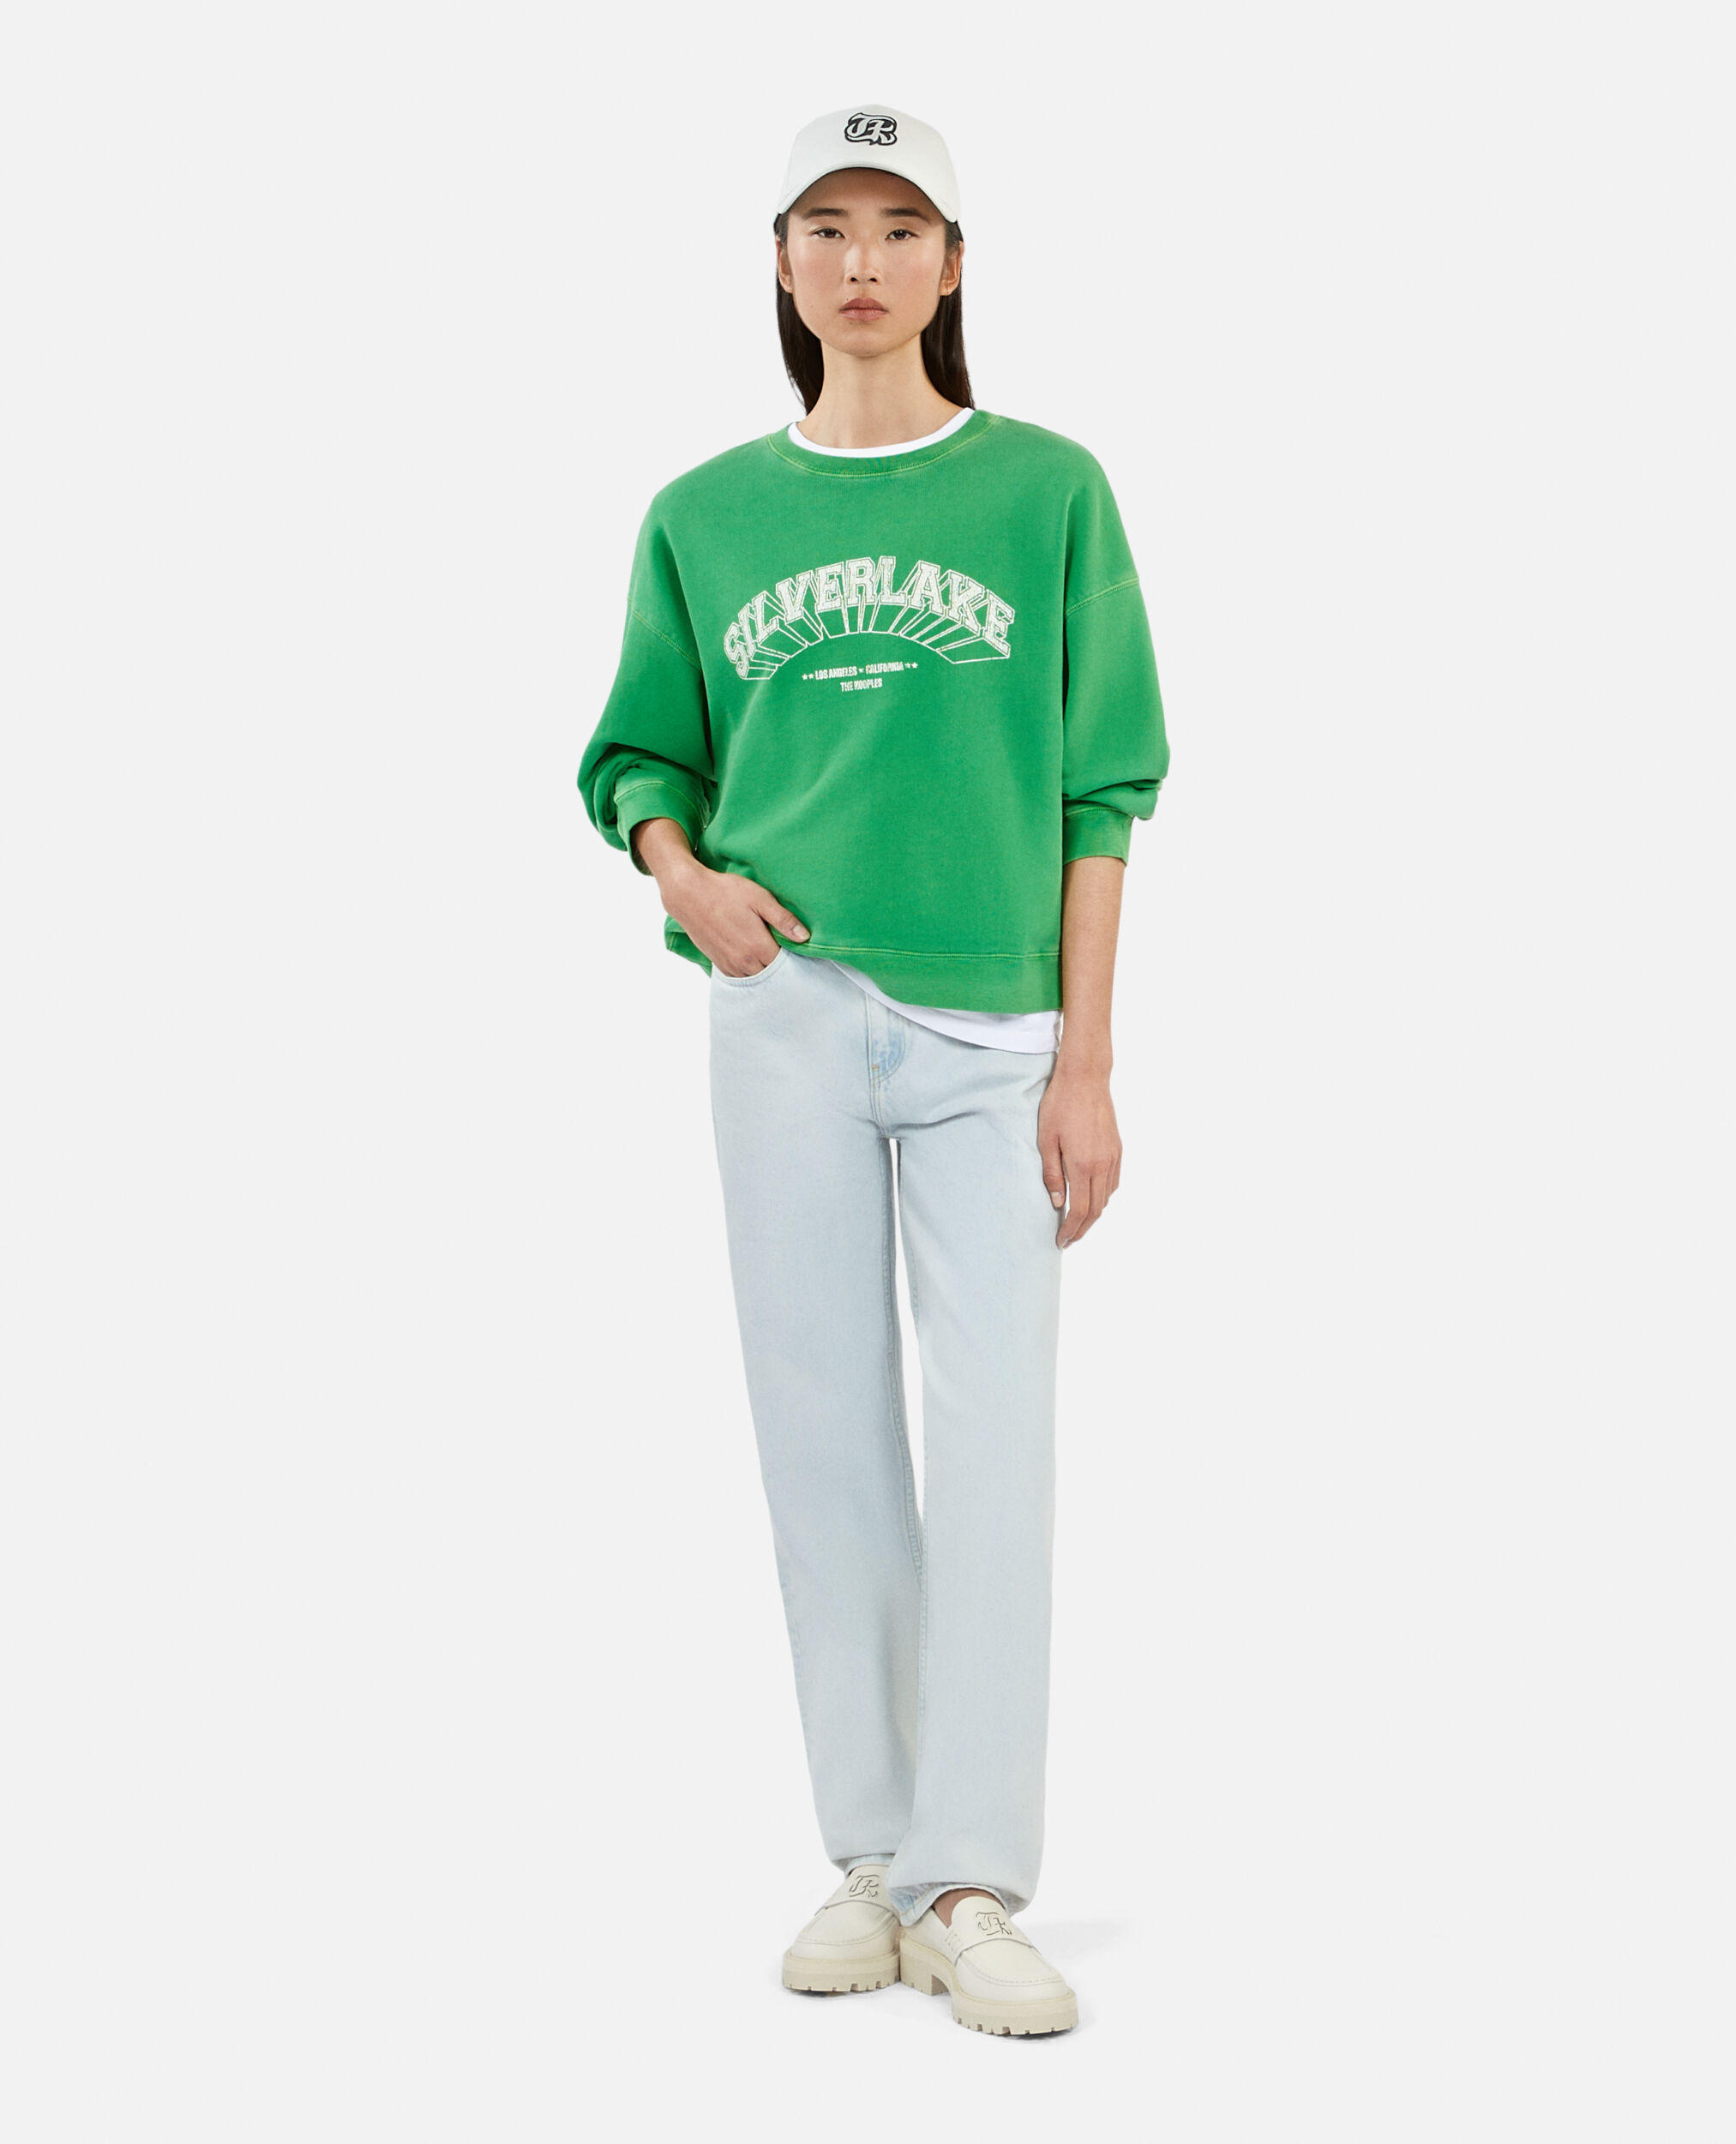 Grünes Sweatshirt mit Silverlake-Siebdruck, GREEN, hi-res image number null